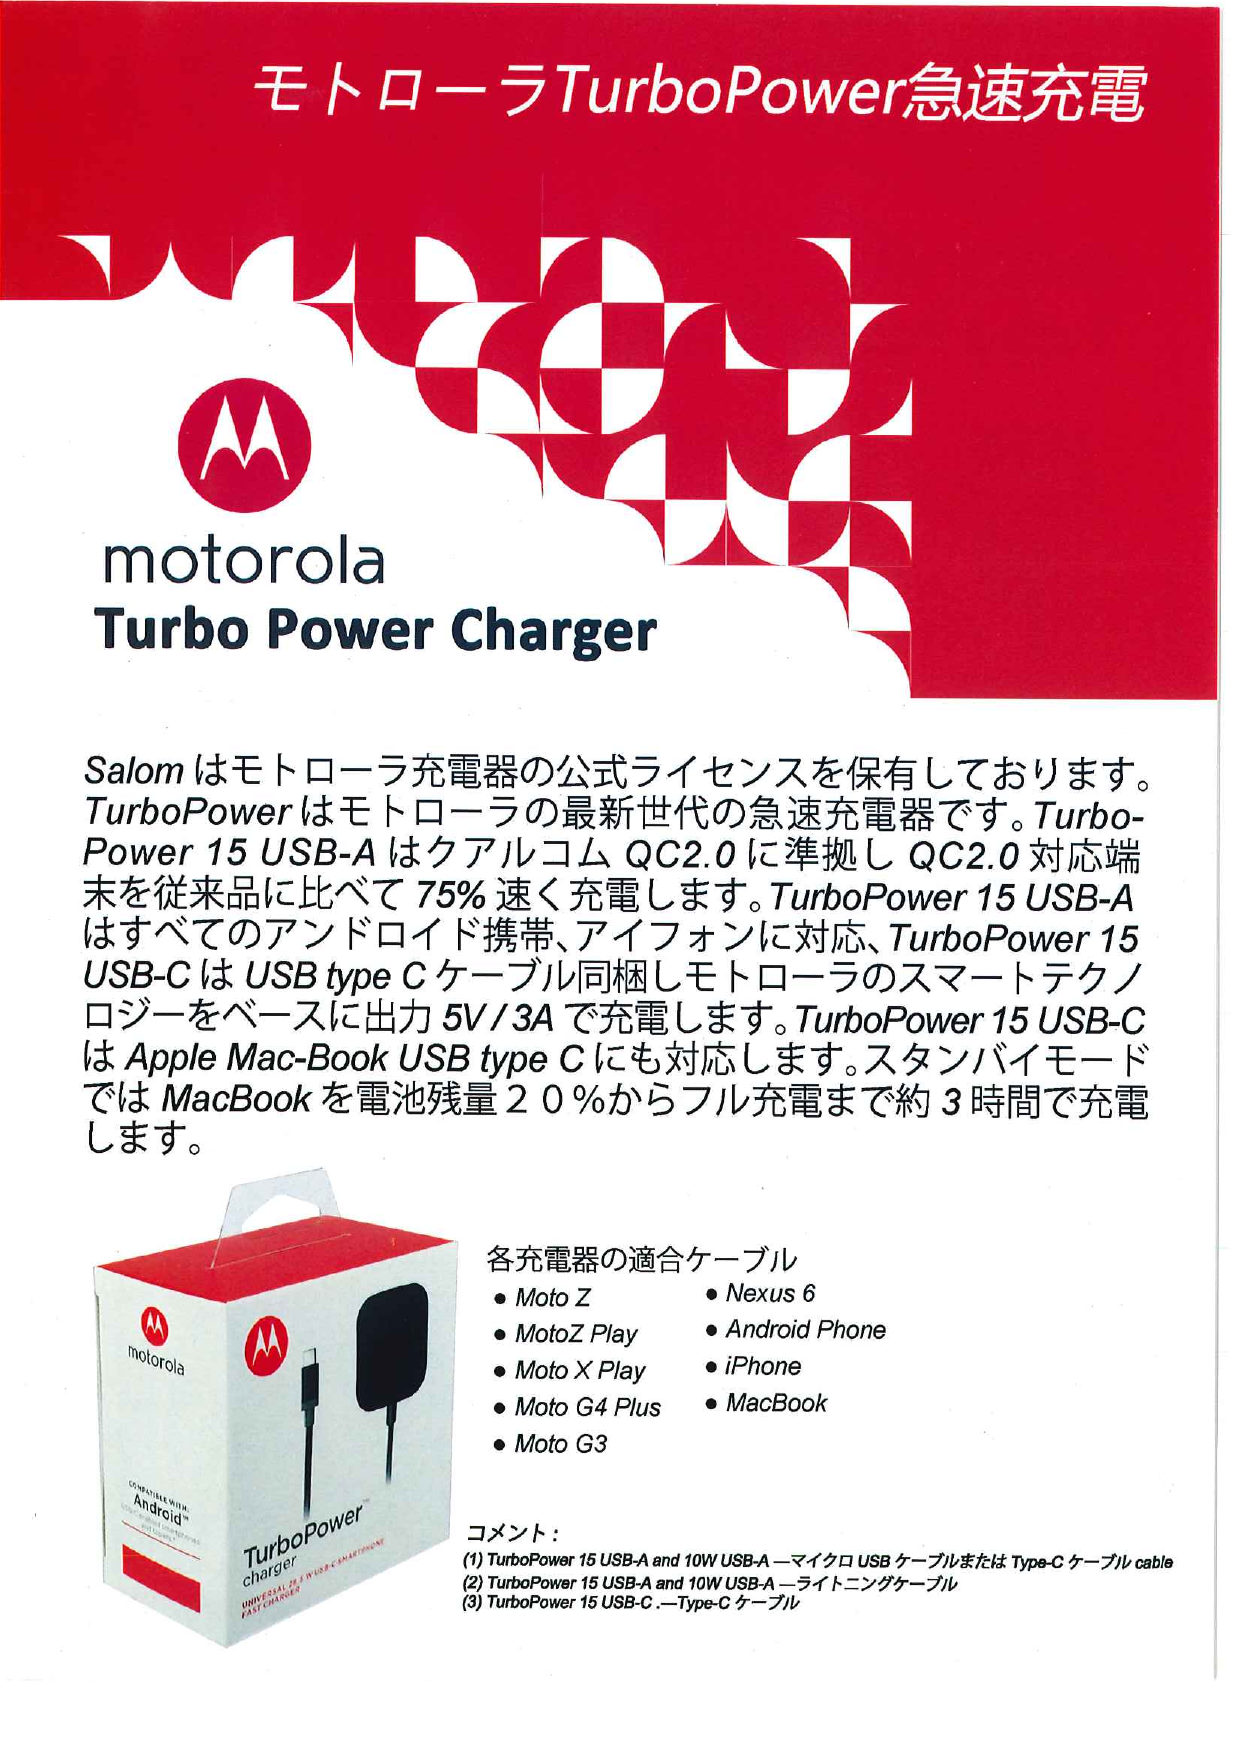 モトローラTurbo Power急速充電 motorola Turbo Power Charger（株式